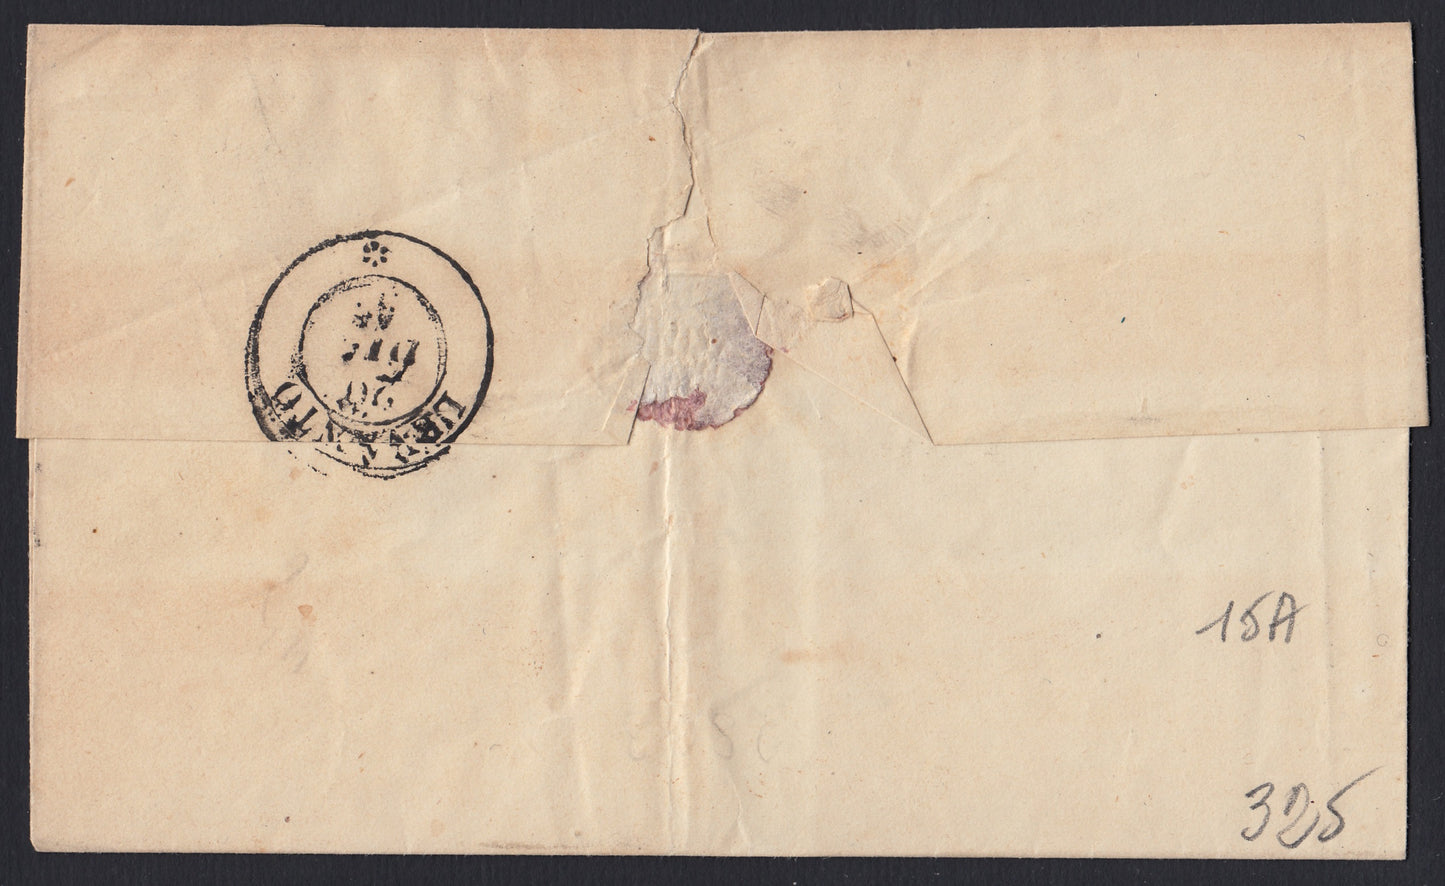 196 - 1857 - Lettera spedita da Genova per Levanto 19/12/57 affrancata con c. 20 Azzurro grigiastro I tavola tiratura 1857 (15A)